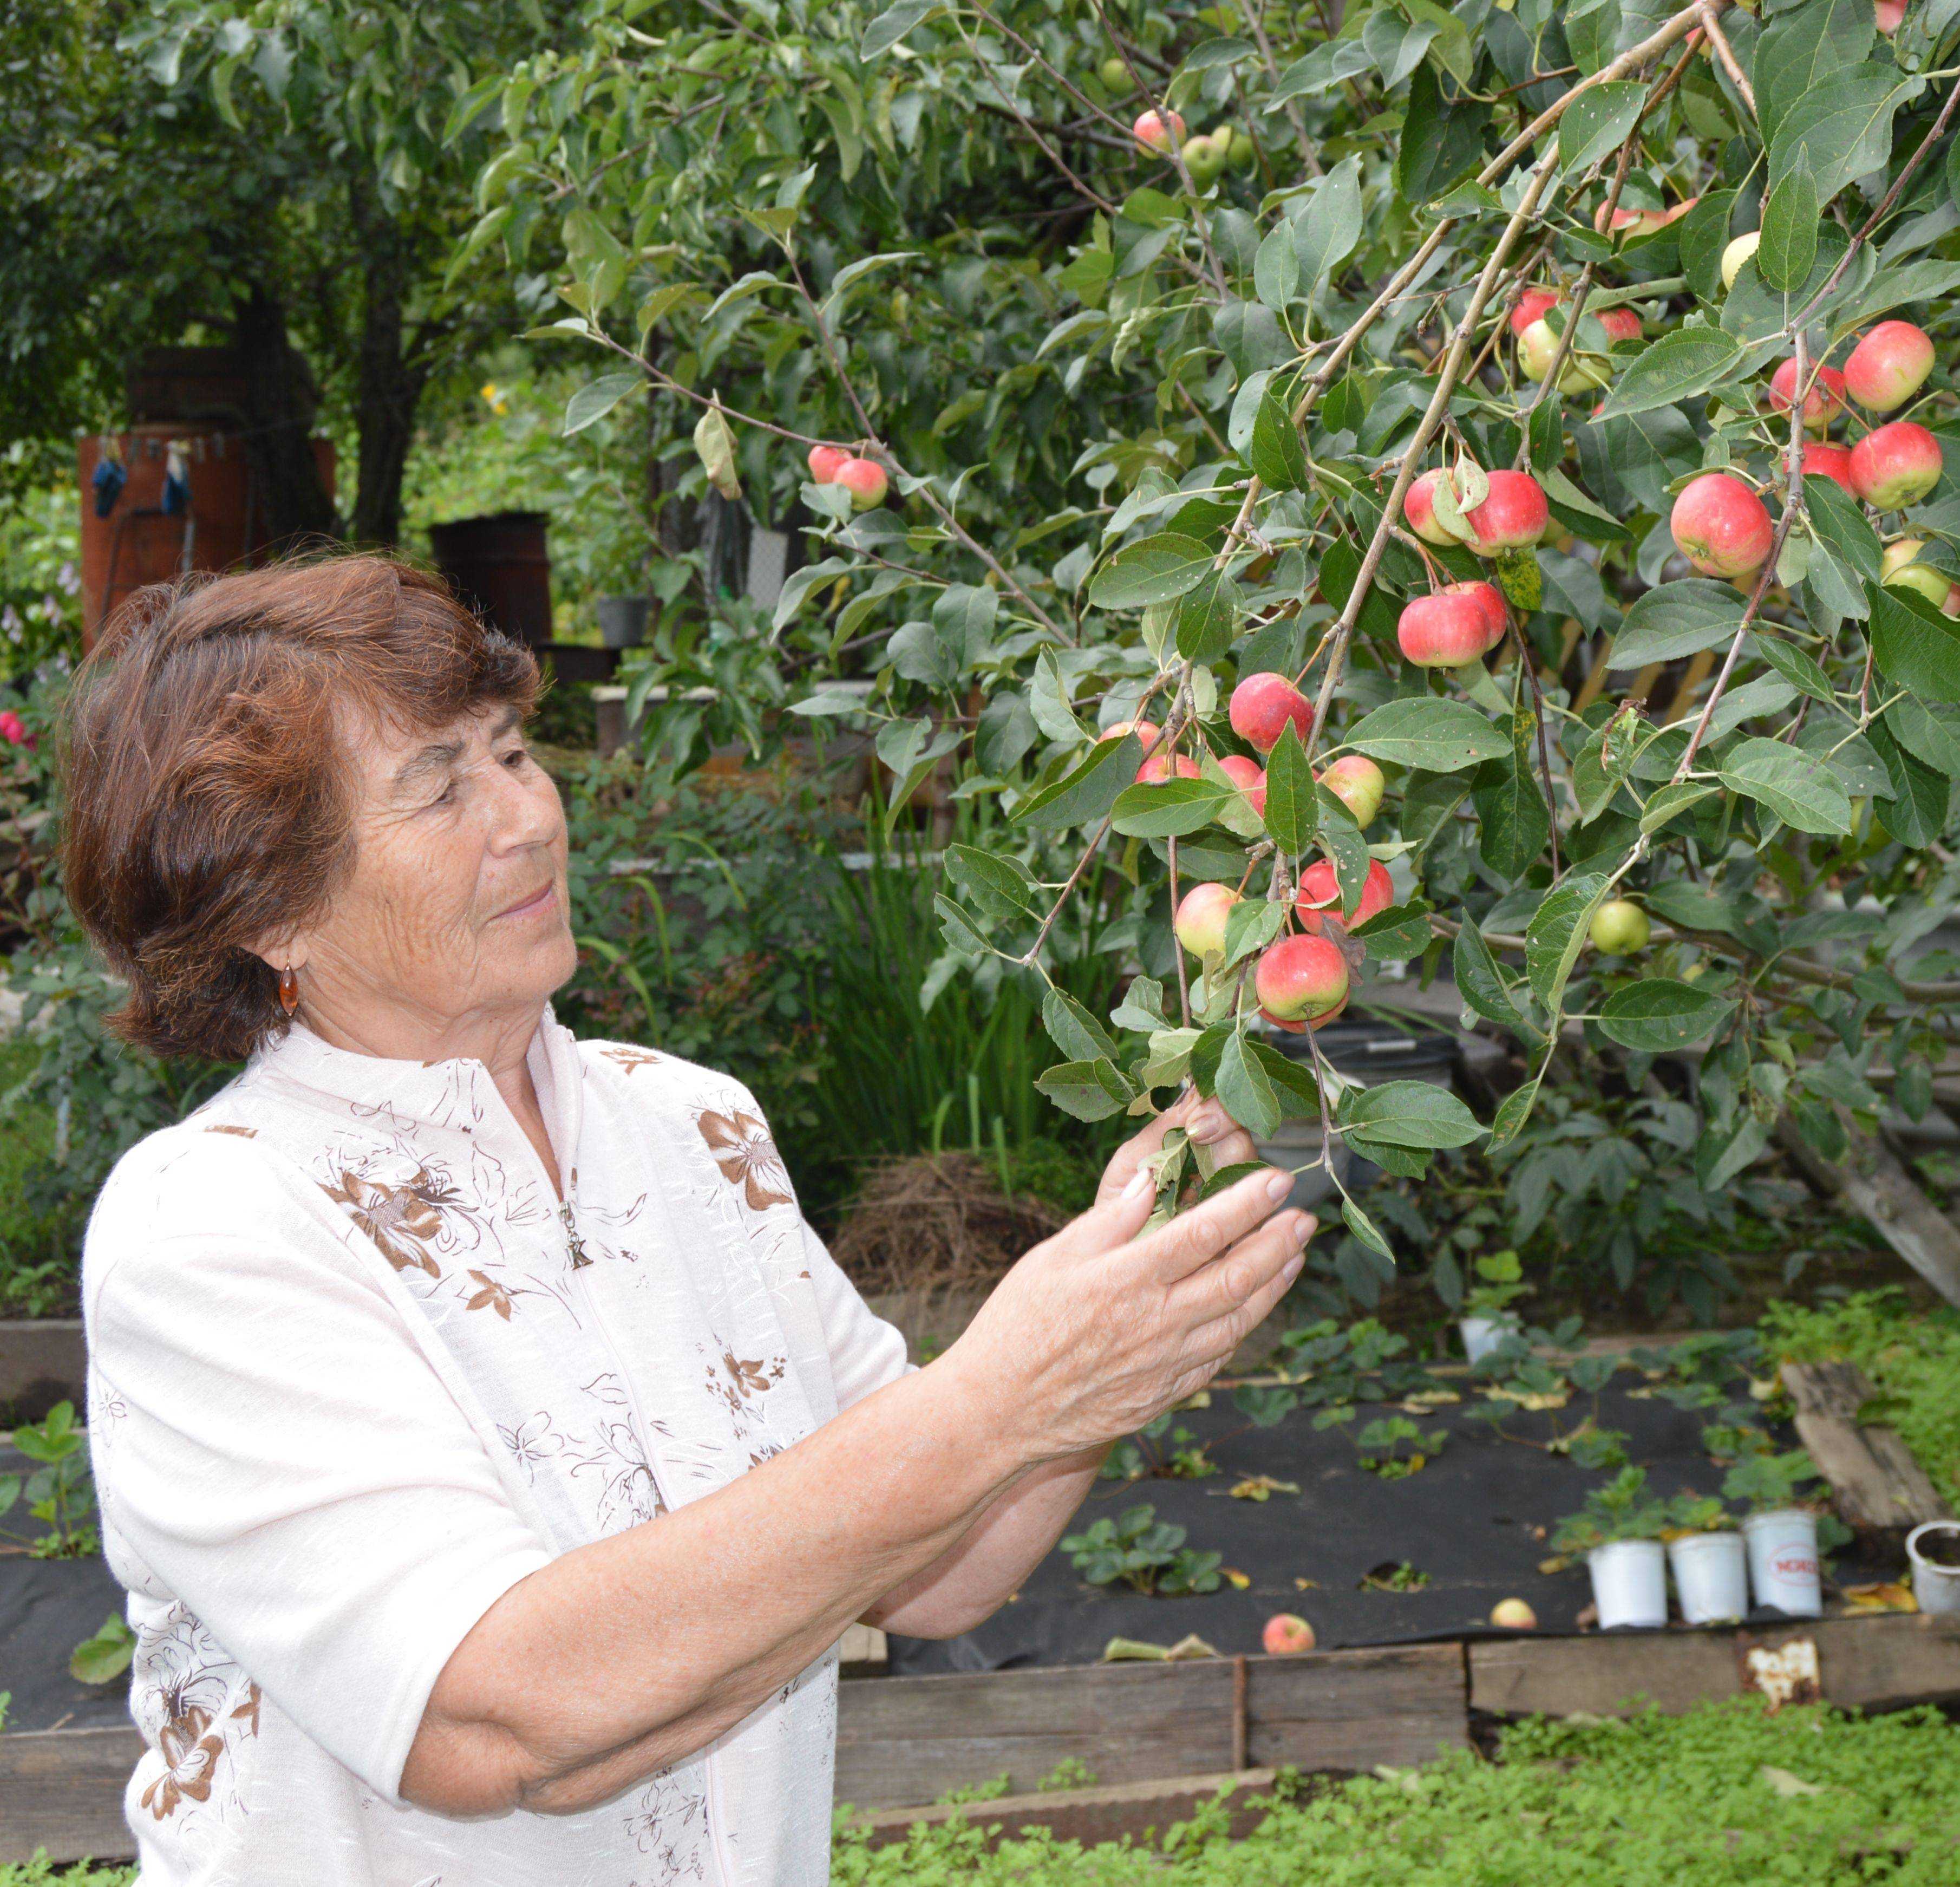 Описание и характеристики летнего сорта яблонь мантет, правила посадки и выращивания